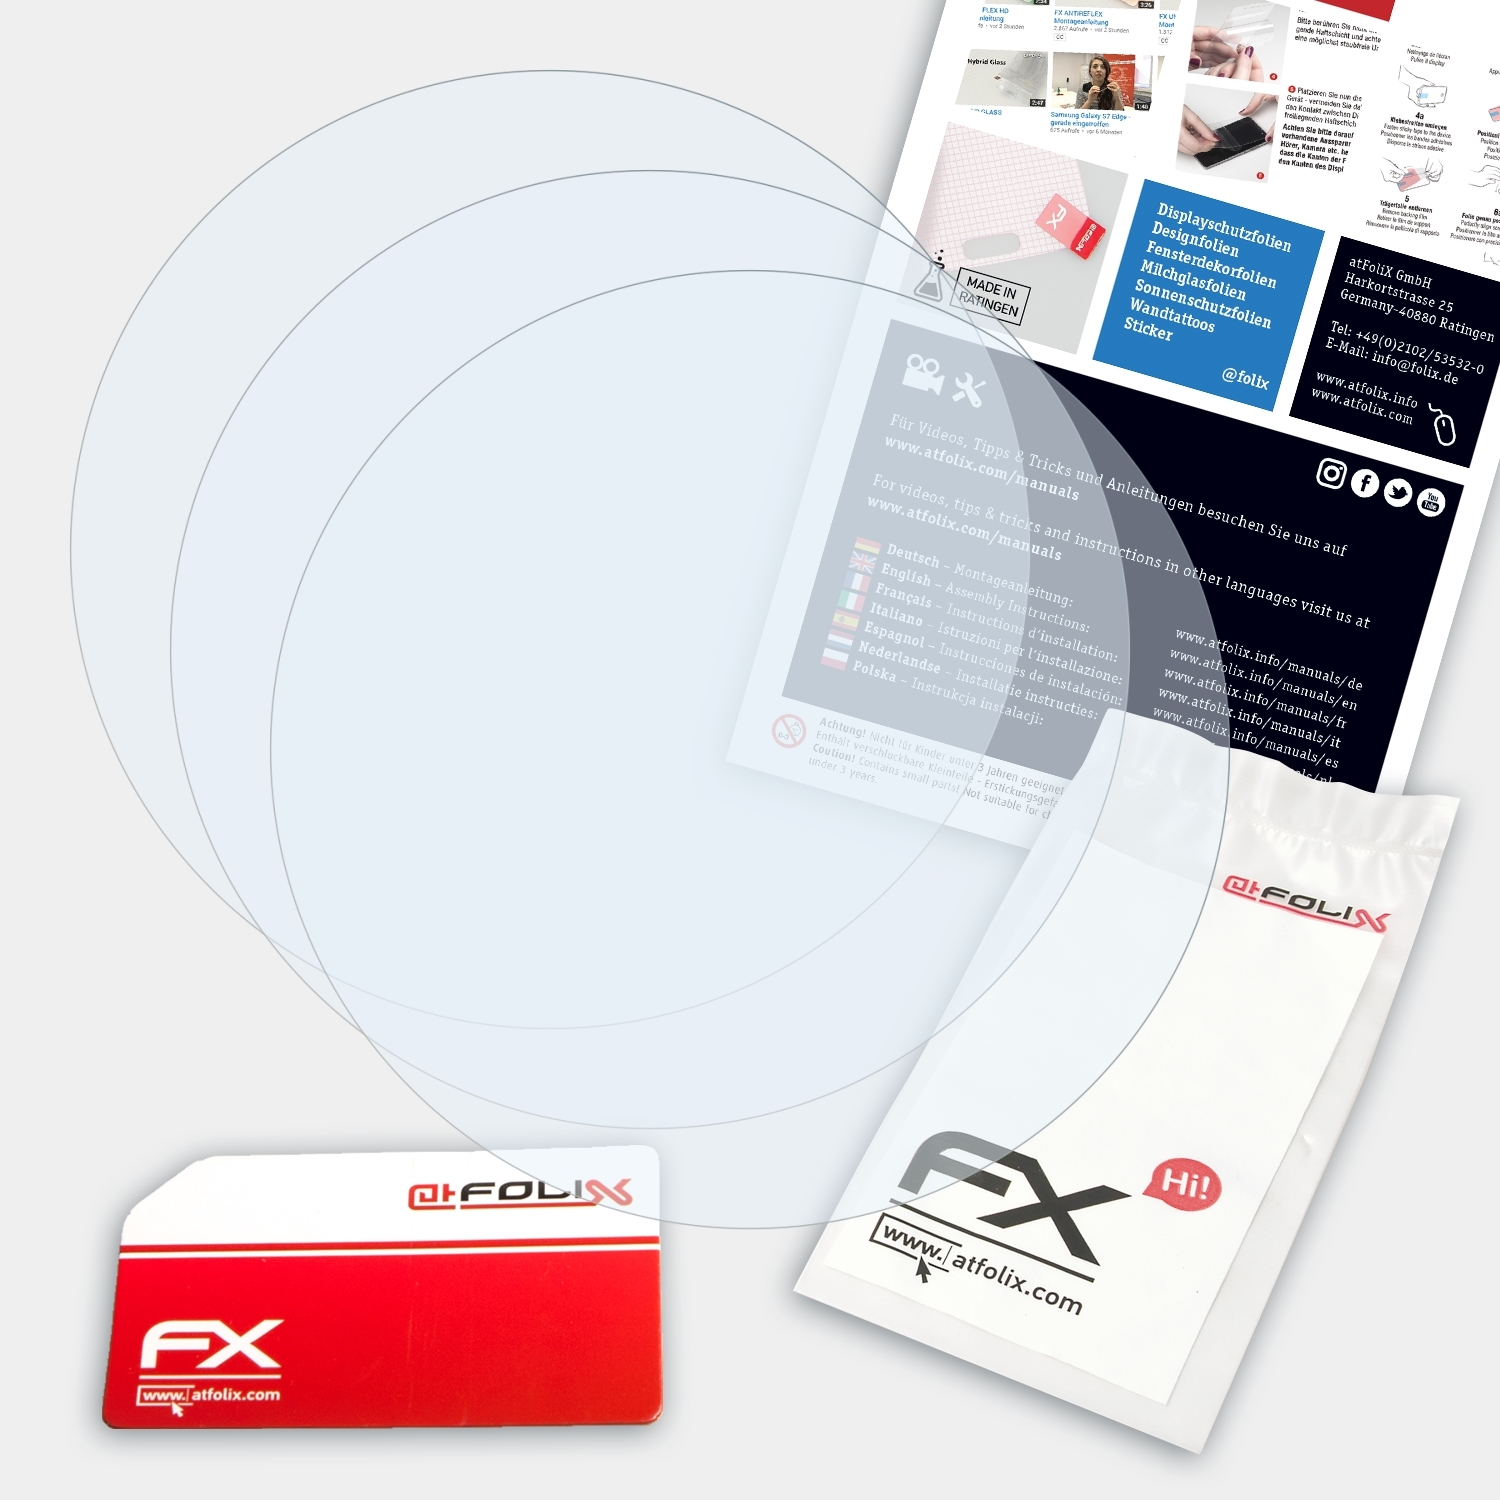 FX-Clear 3x ATFOLIX Suunto Ambit3 Peak) Displayschutz(für